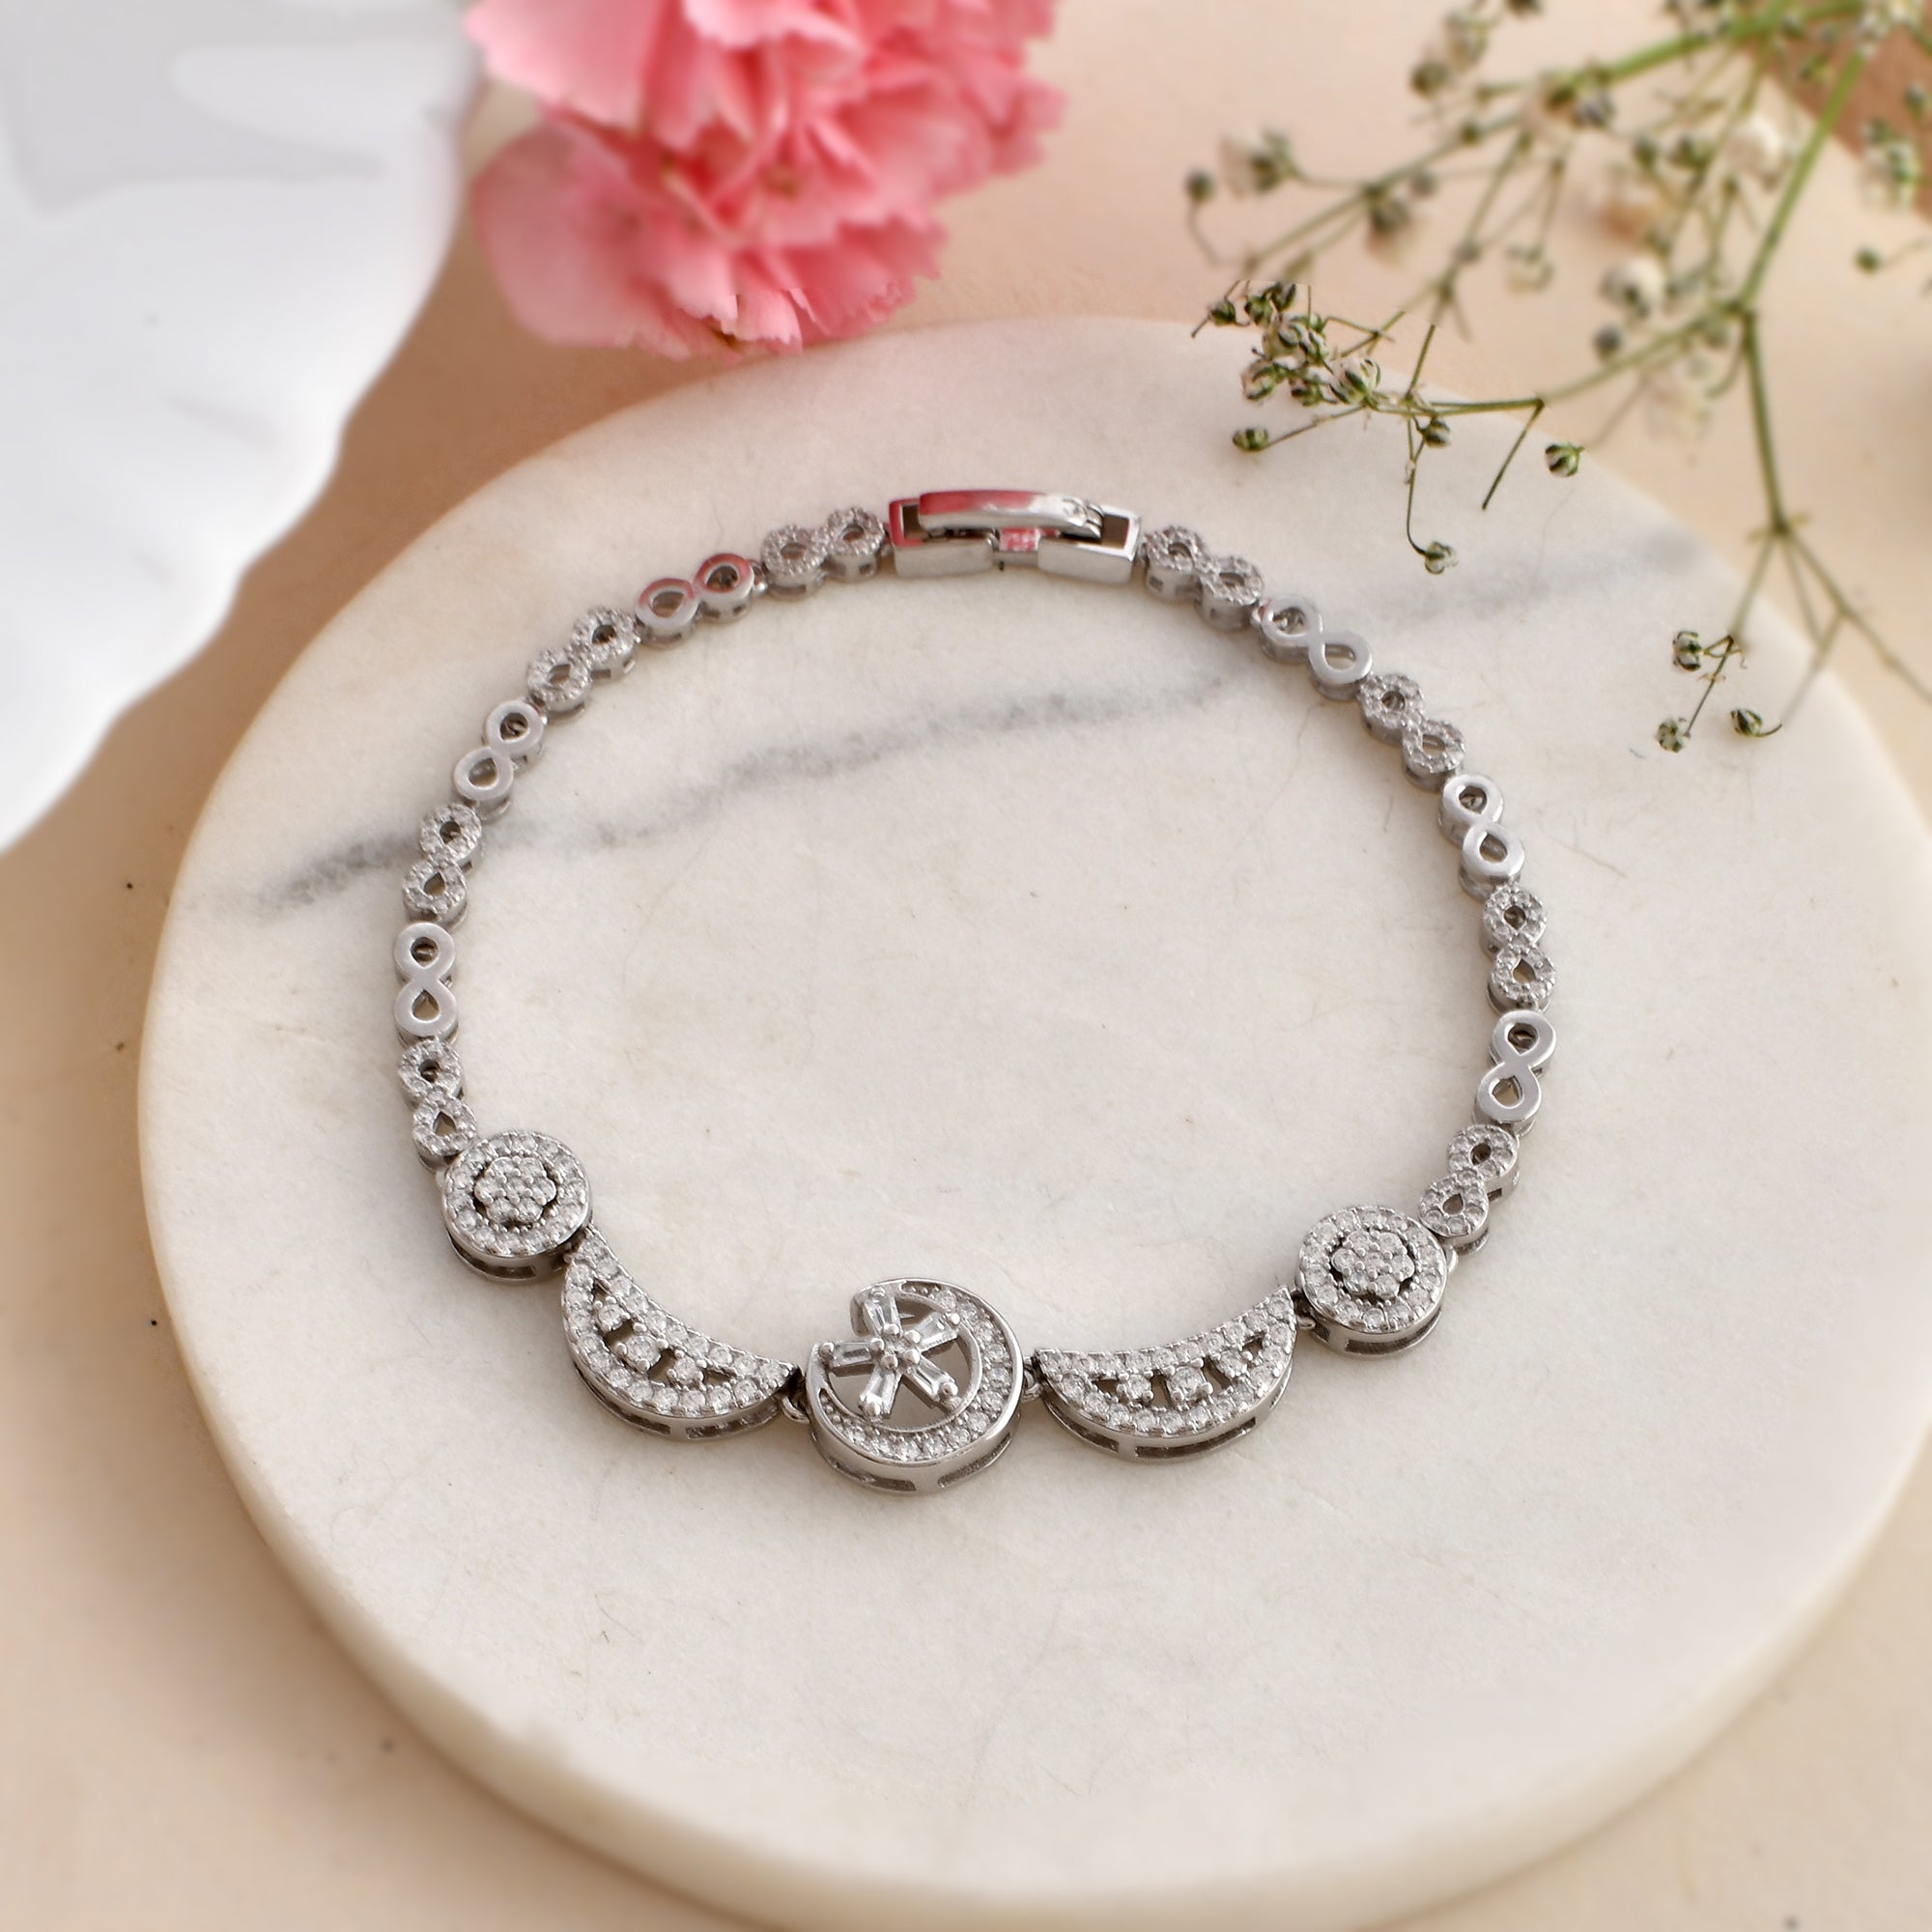 Silver Bracelet Design For Girls/Silver Bracelet For Girls/New Stylish Silver  Bracelet Design Images - YouTube